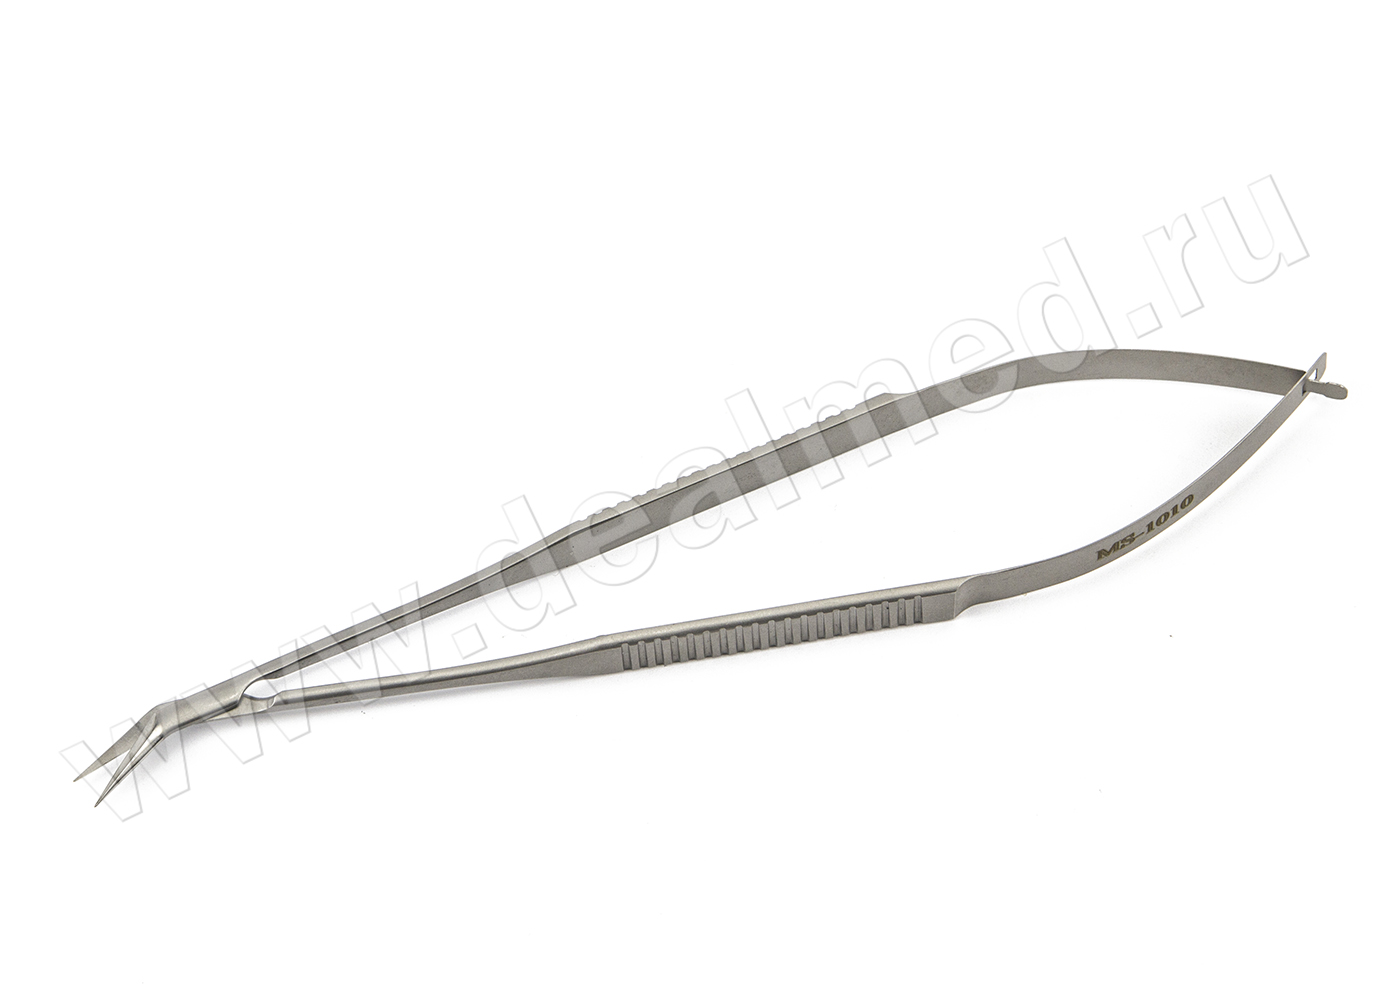 Ножницы микрохирургические, 160 мм, плоская ручка, остроконечные, лезвия длиной 12 мм, изогнутые по ребру MS-1010 ПТО Медтехника, Россия